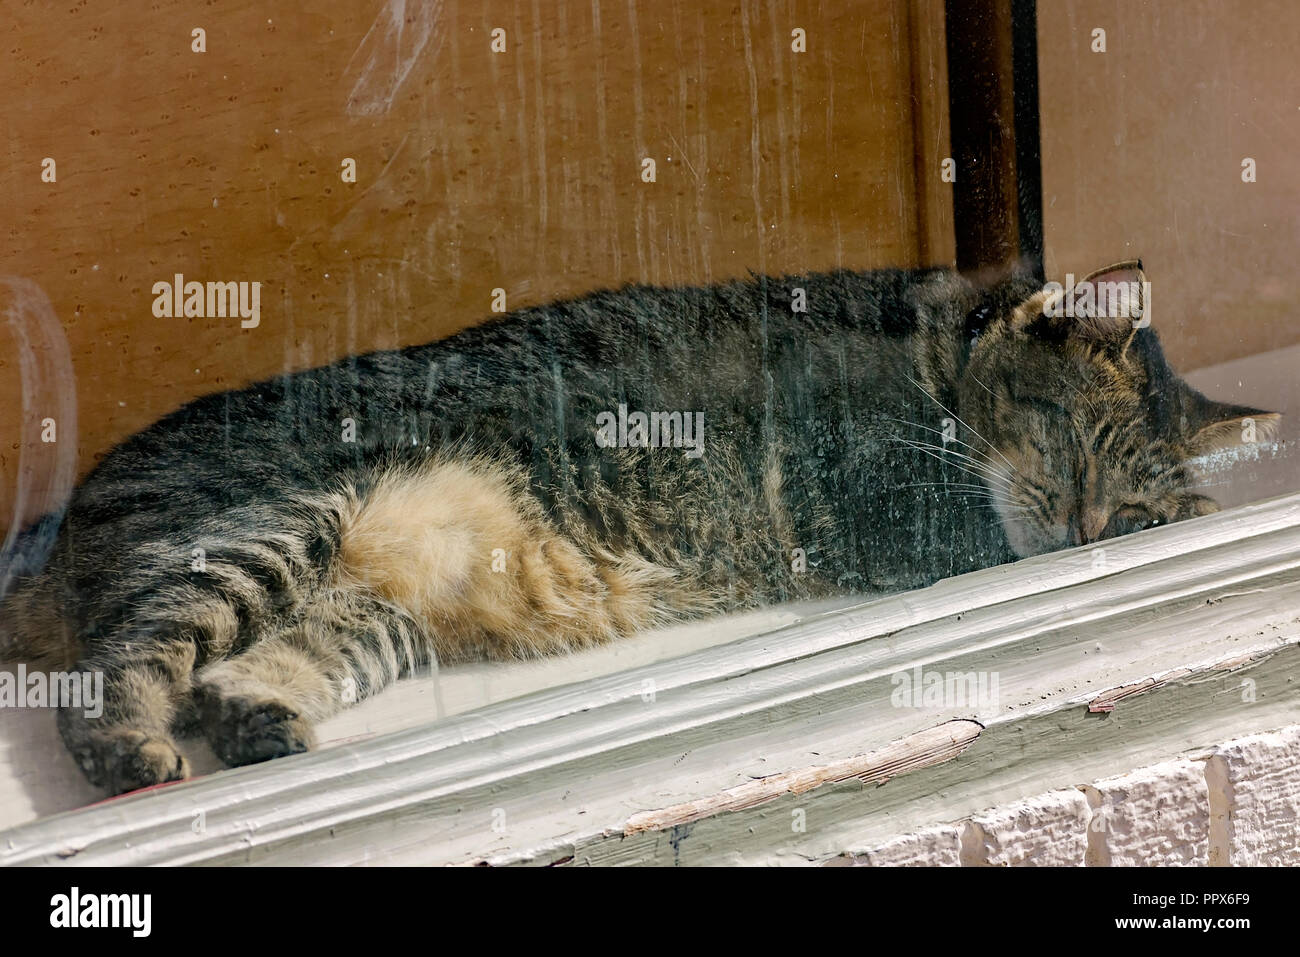 Un chat tigré dort dans une vitrine dans le quartier français, le 15 novembre 2015, à la Nouvelle Orléans, Louisiane. Banque D'Images